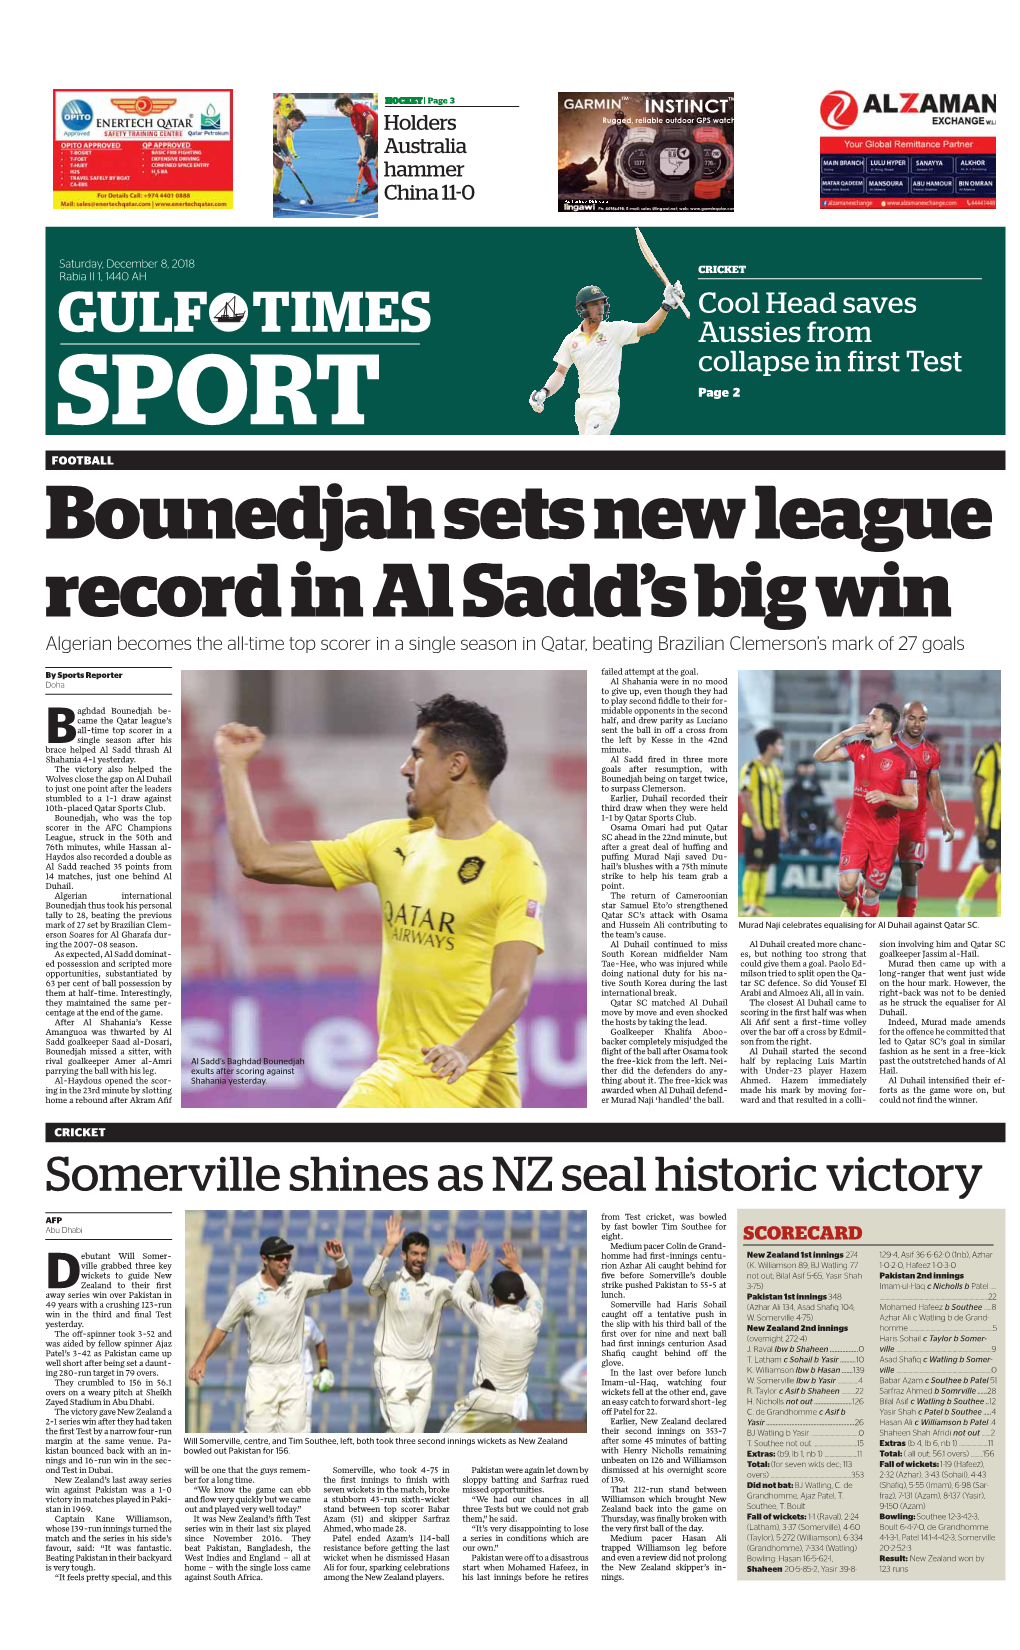 Bounedjah Sets New League Record in Al Sadd's Big